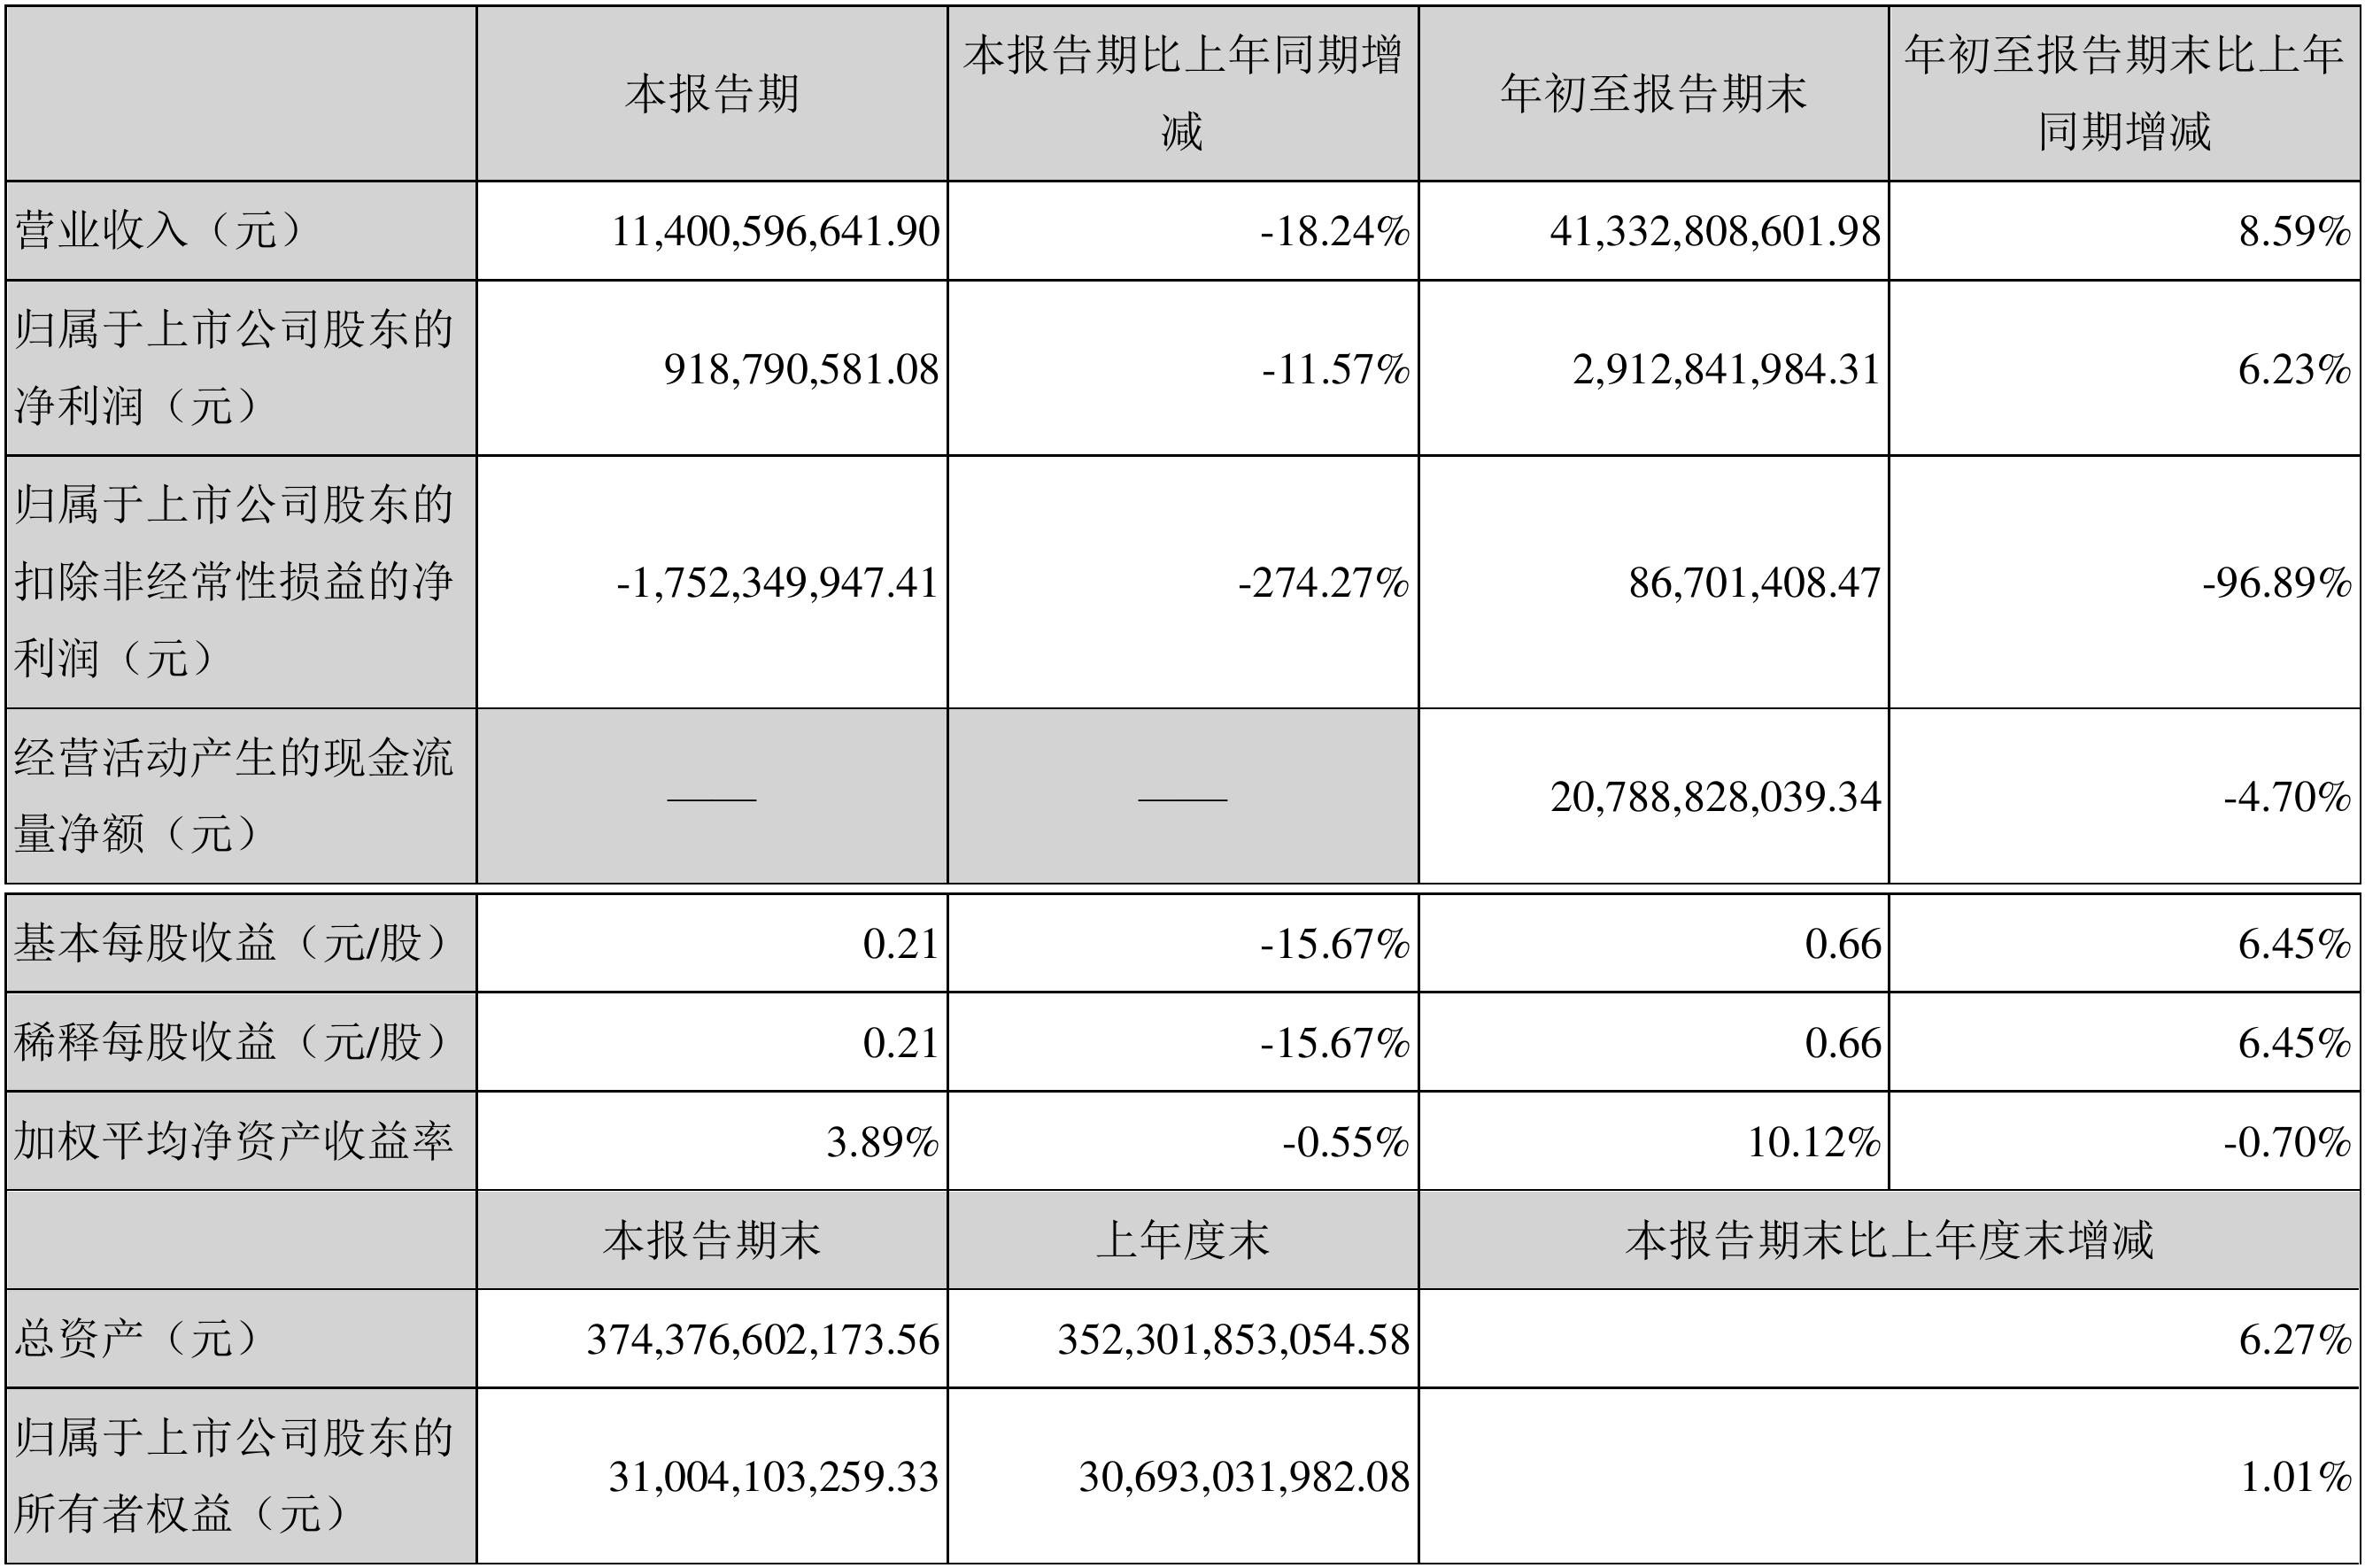 阳光城发布三季度财报 实现营业收入为114.01亿元